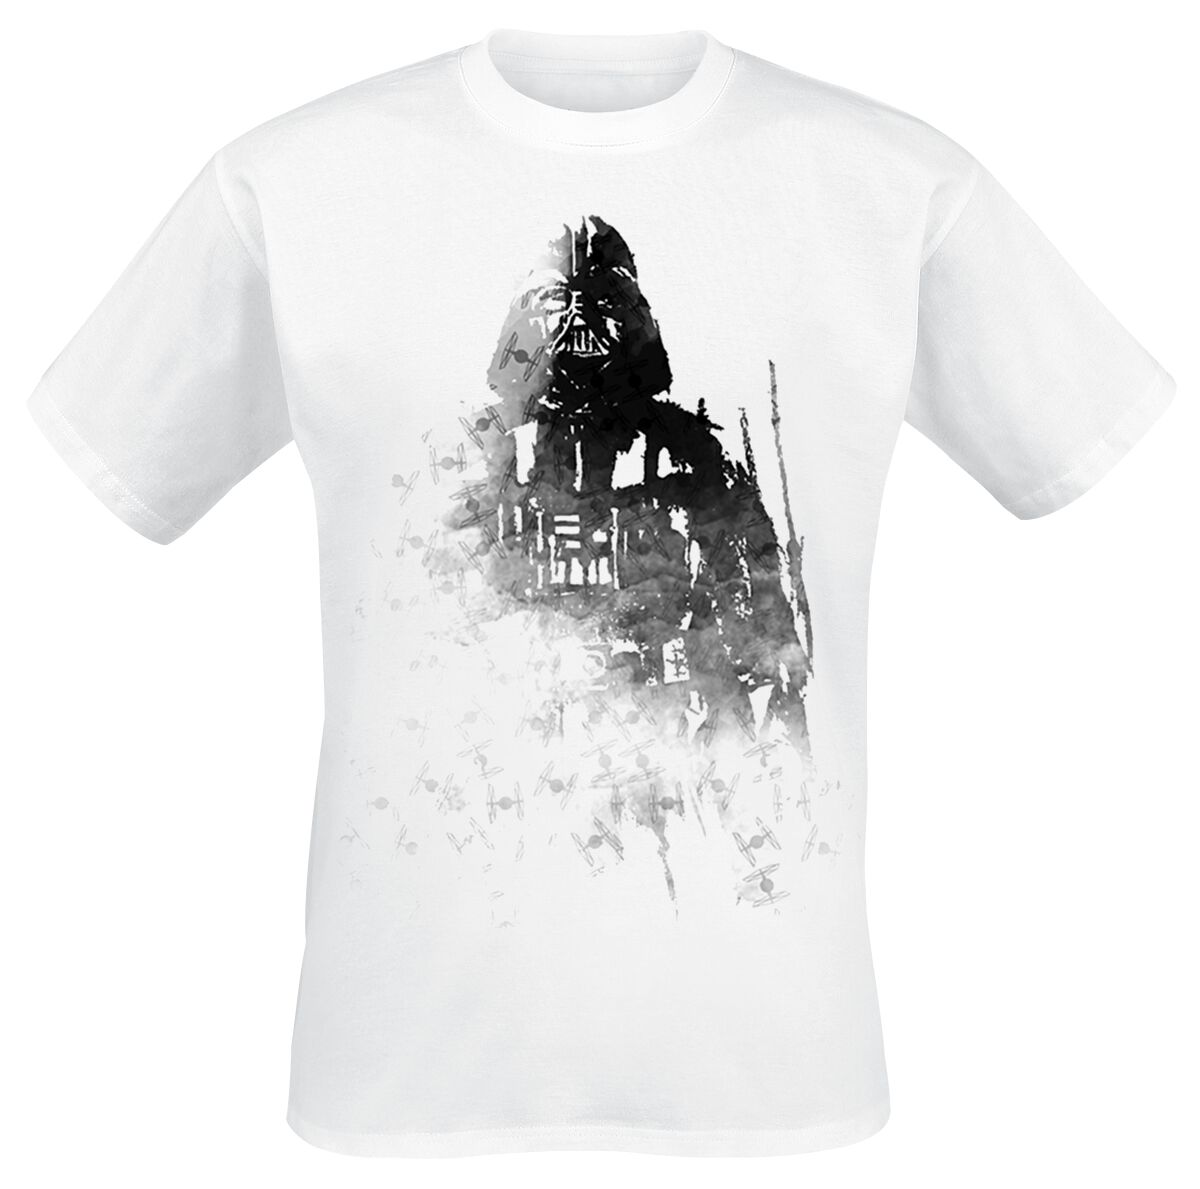 T-Shirt Manches courtes de Star Wars - Dark Vador - Ink - S à XXL - pour Homme - blanc